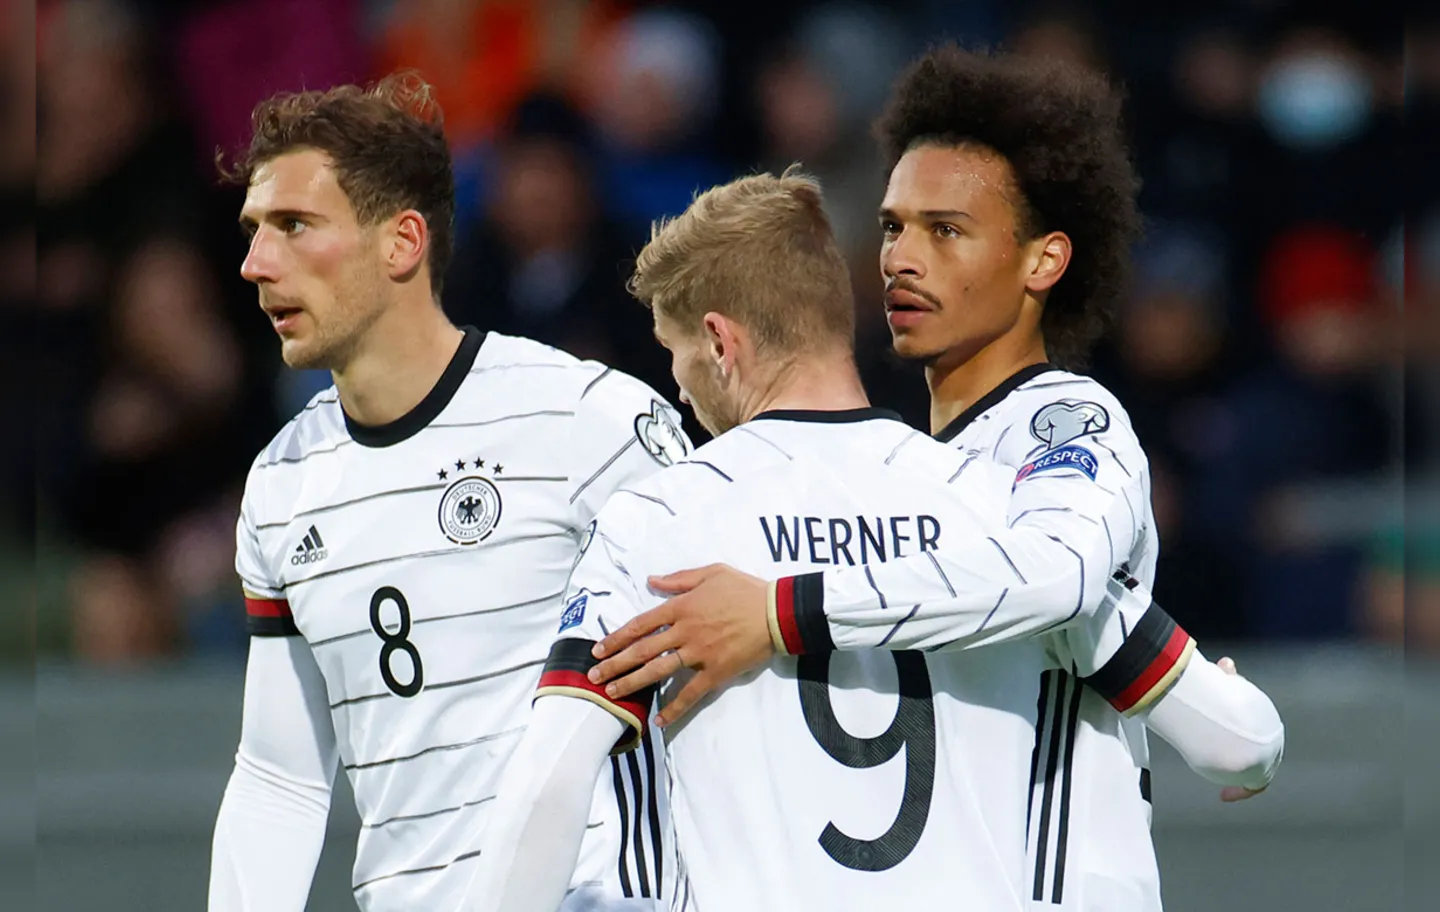 Com 15 pontos, a Alemanha lidera seu grupo com autoridade | Foto: Odd Andersen | AFP